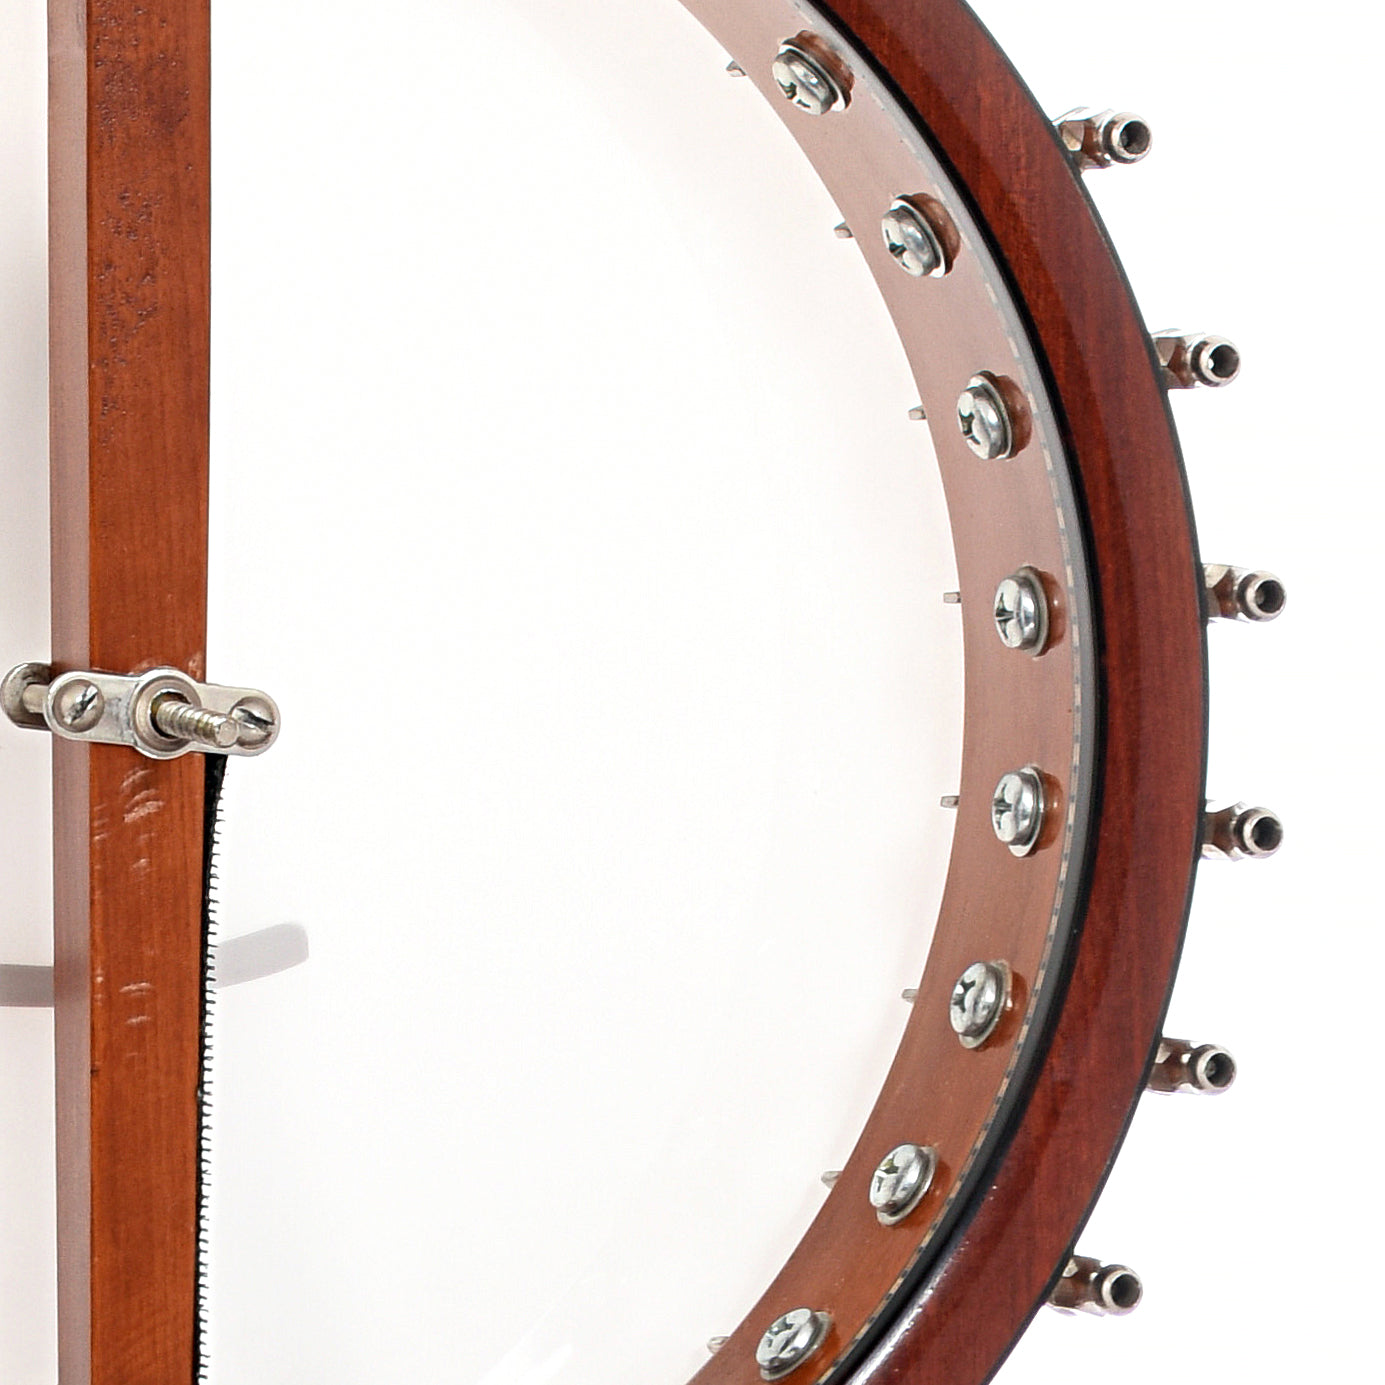 Inside rim of Fairchild Classic  Open Back Banjo